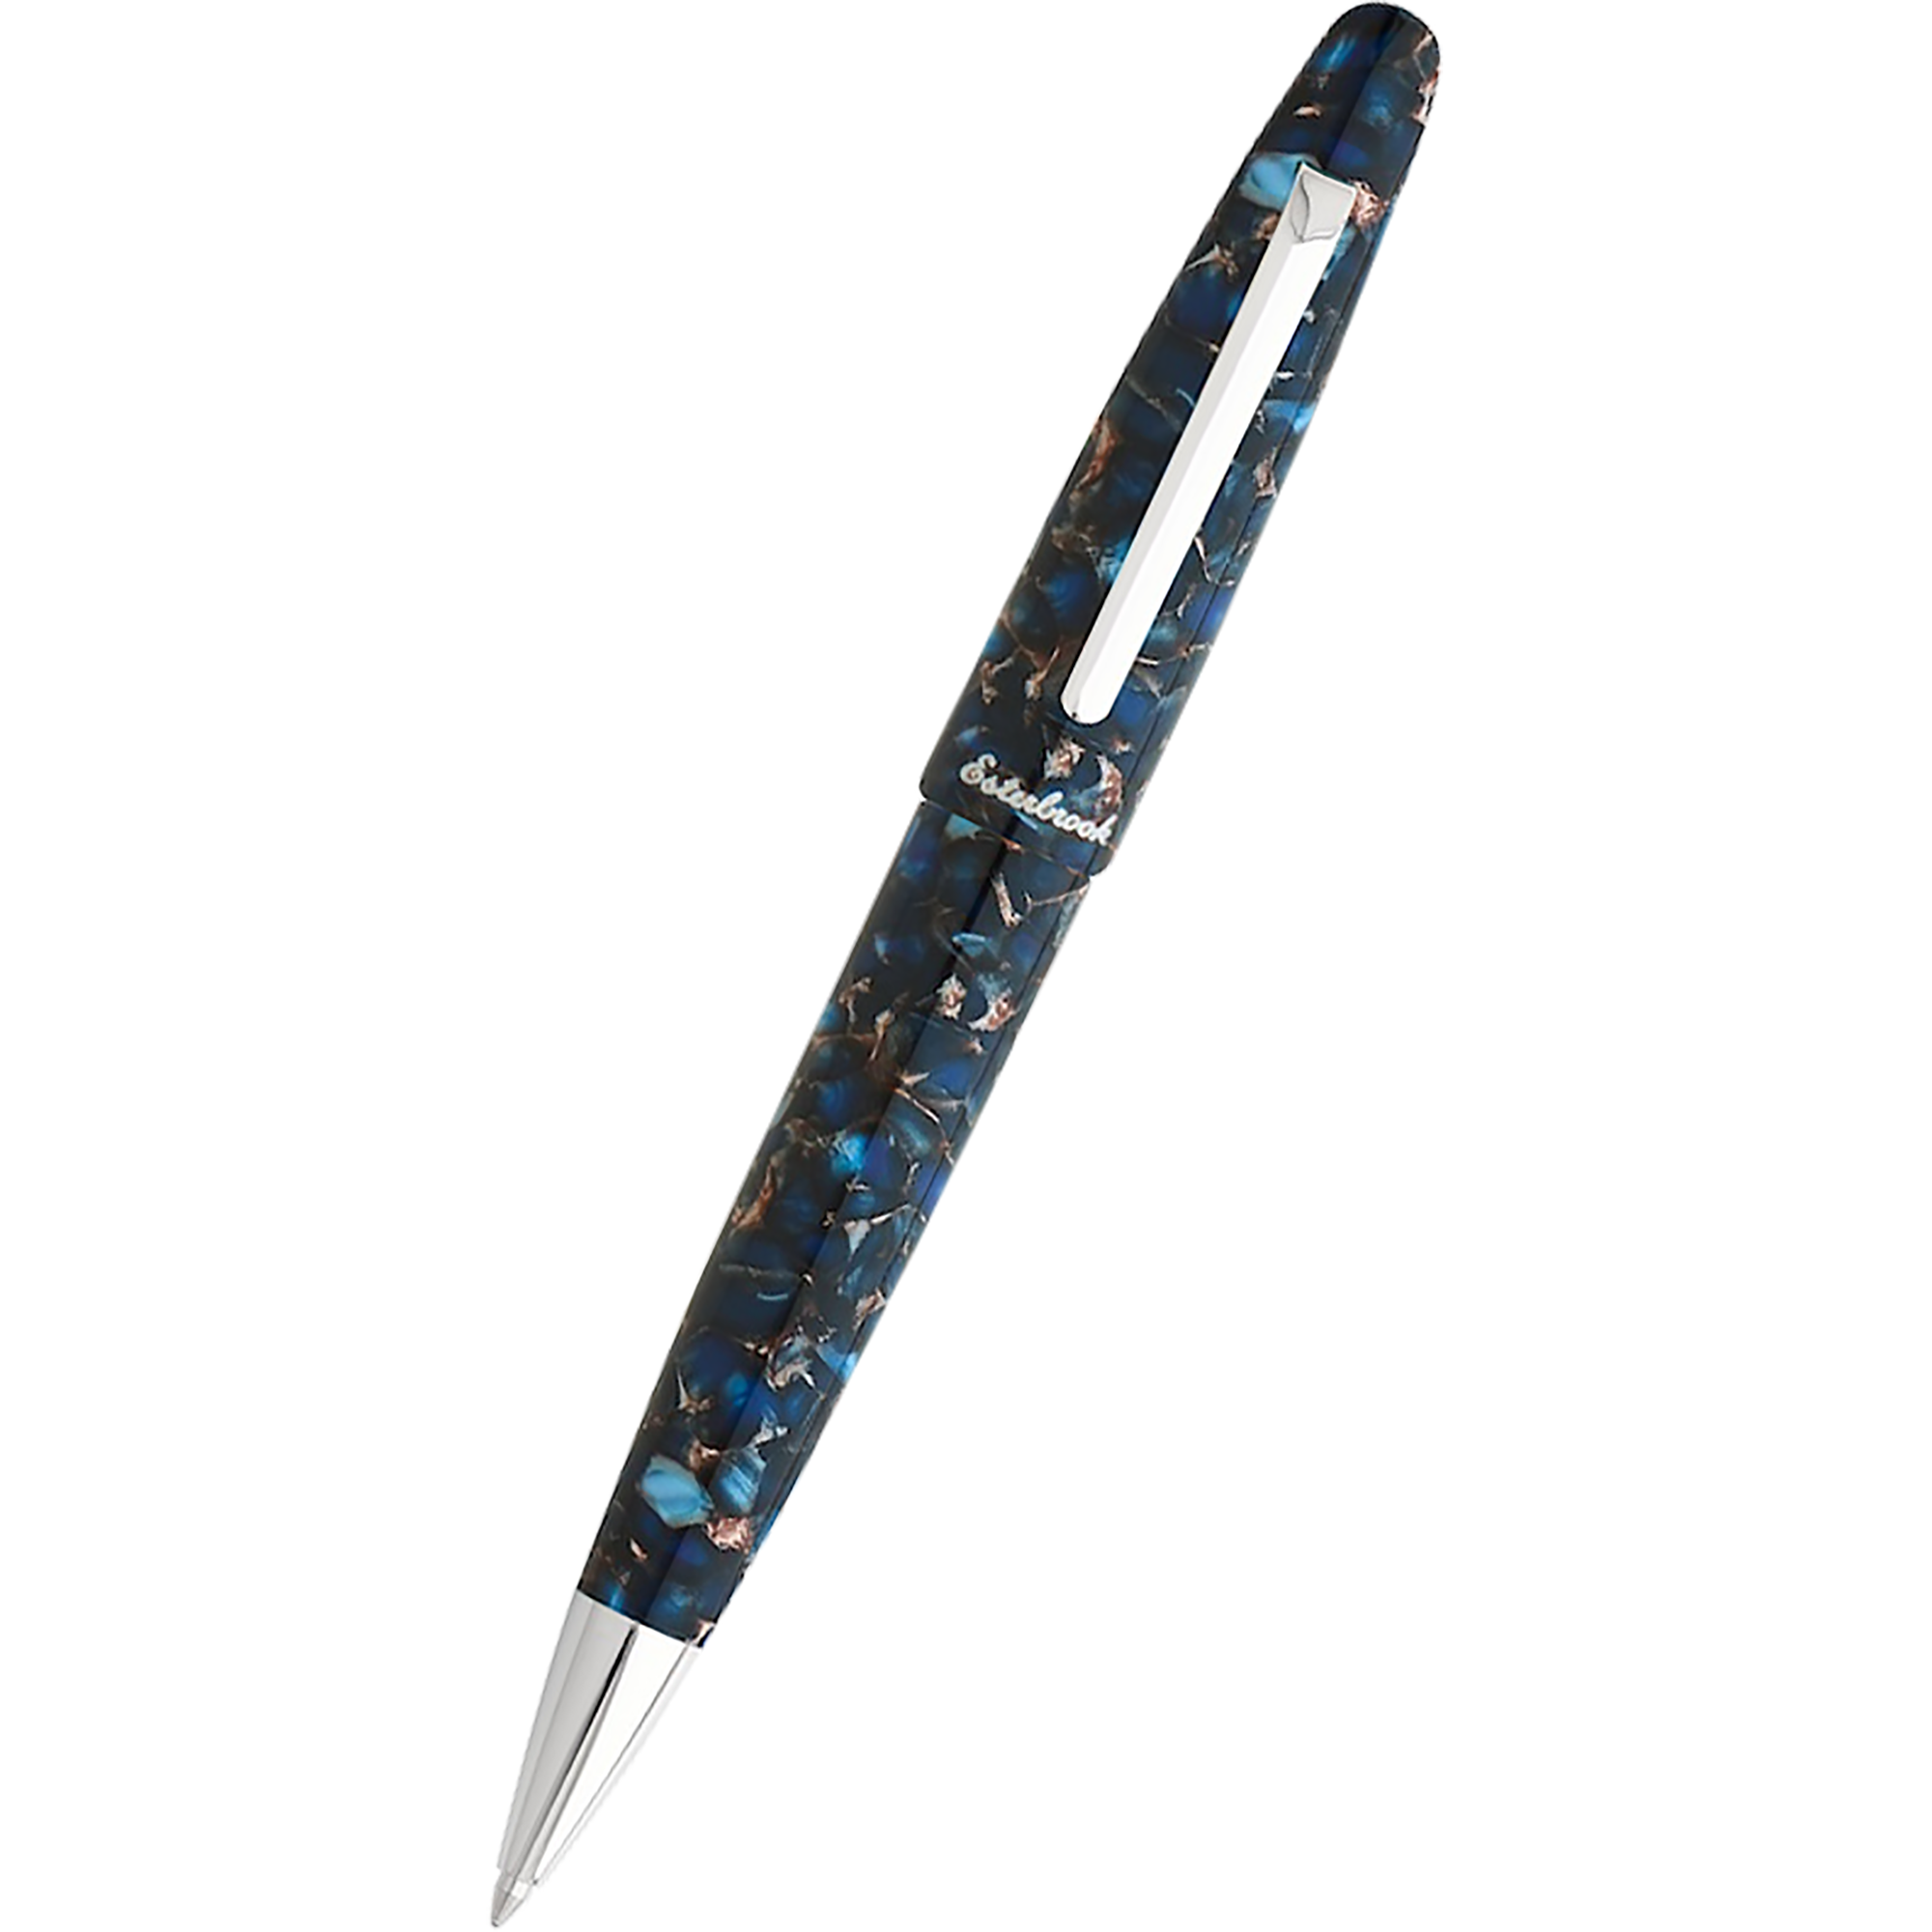 Esterbrook Estie Ballpoint Pen - Nouveau Bleu - Palladium Trim-Pen Boutique Ltd